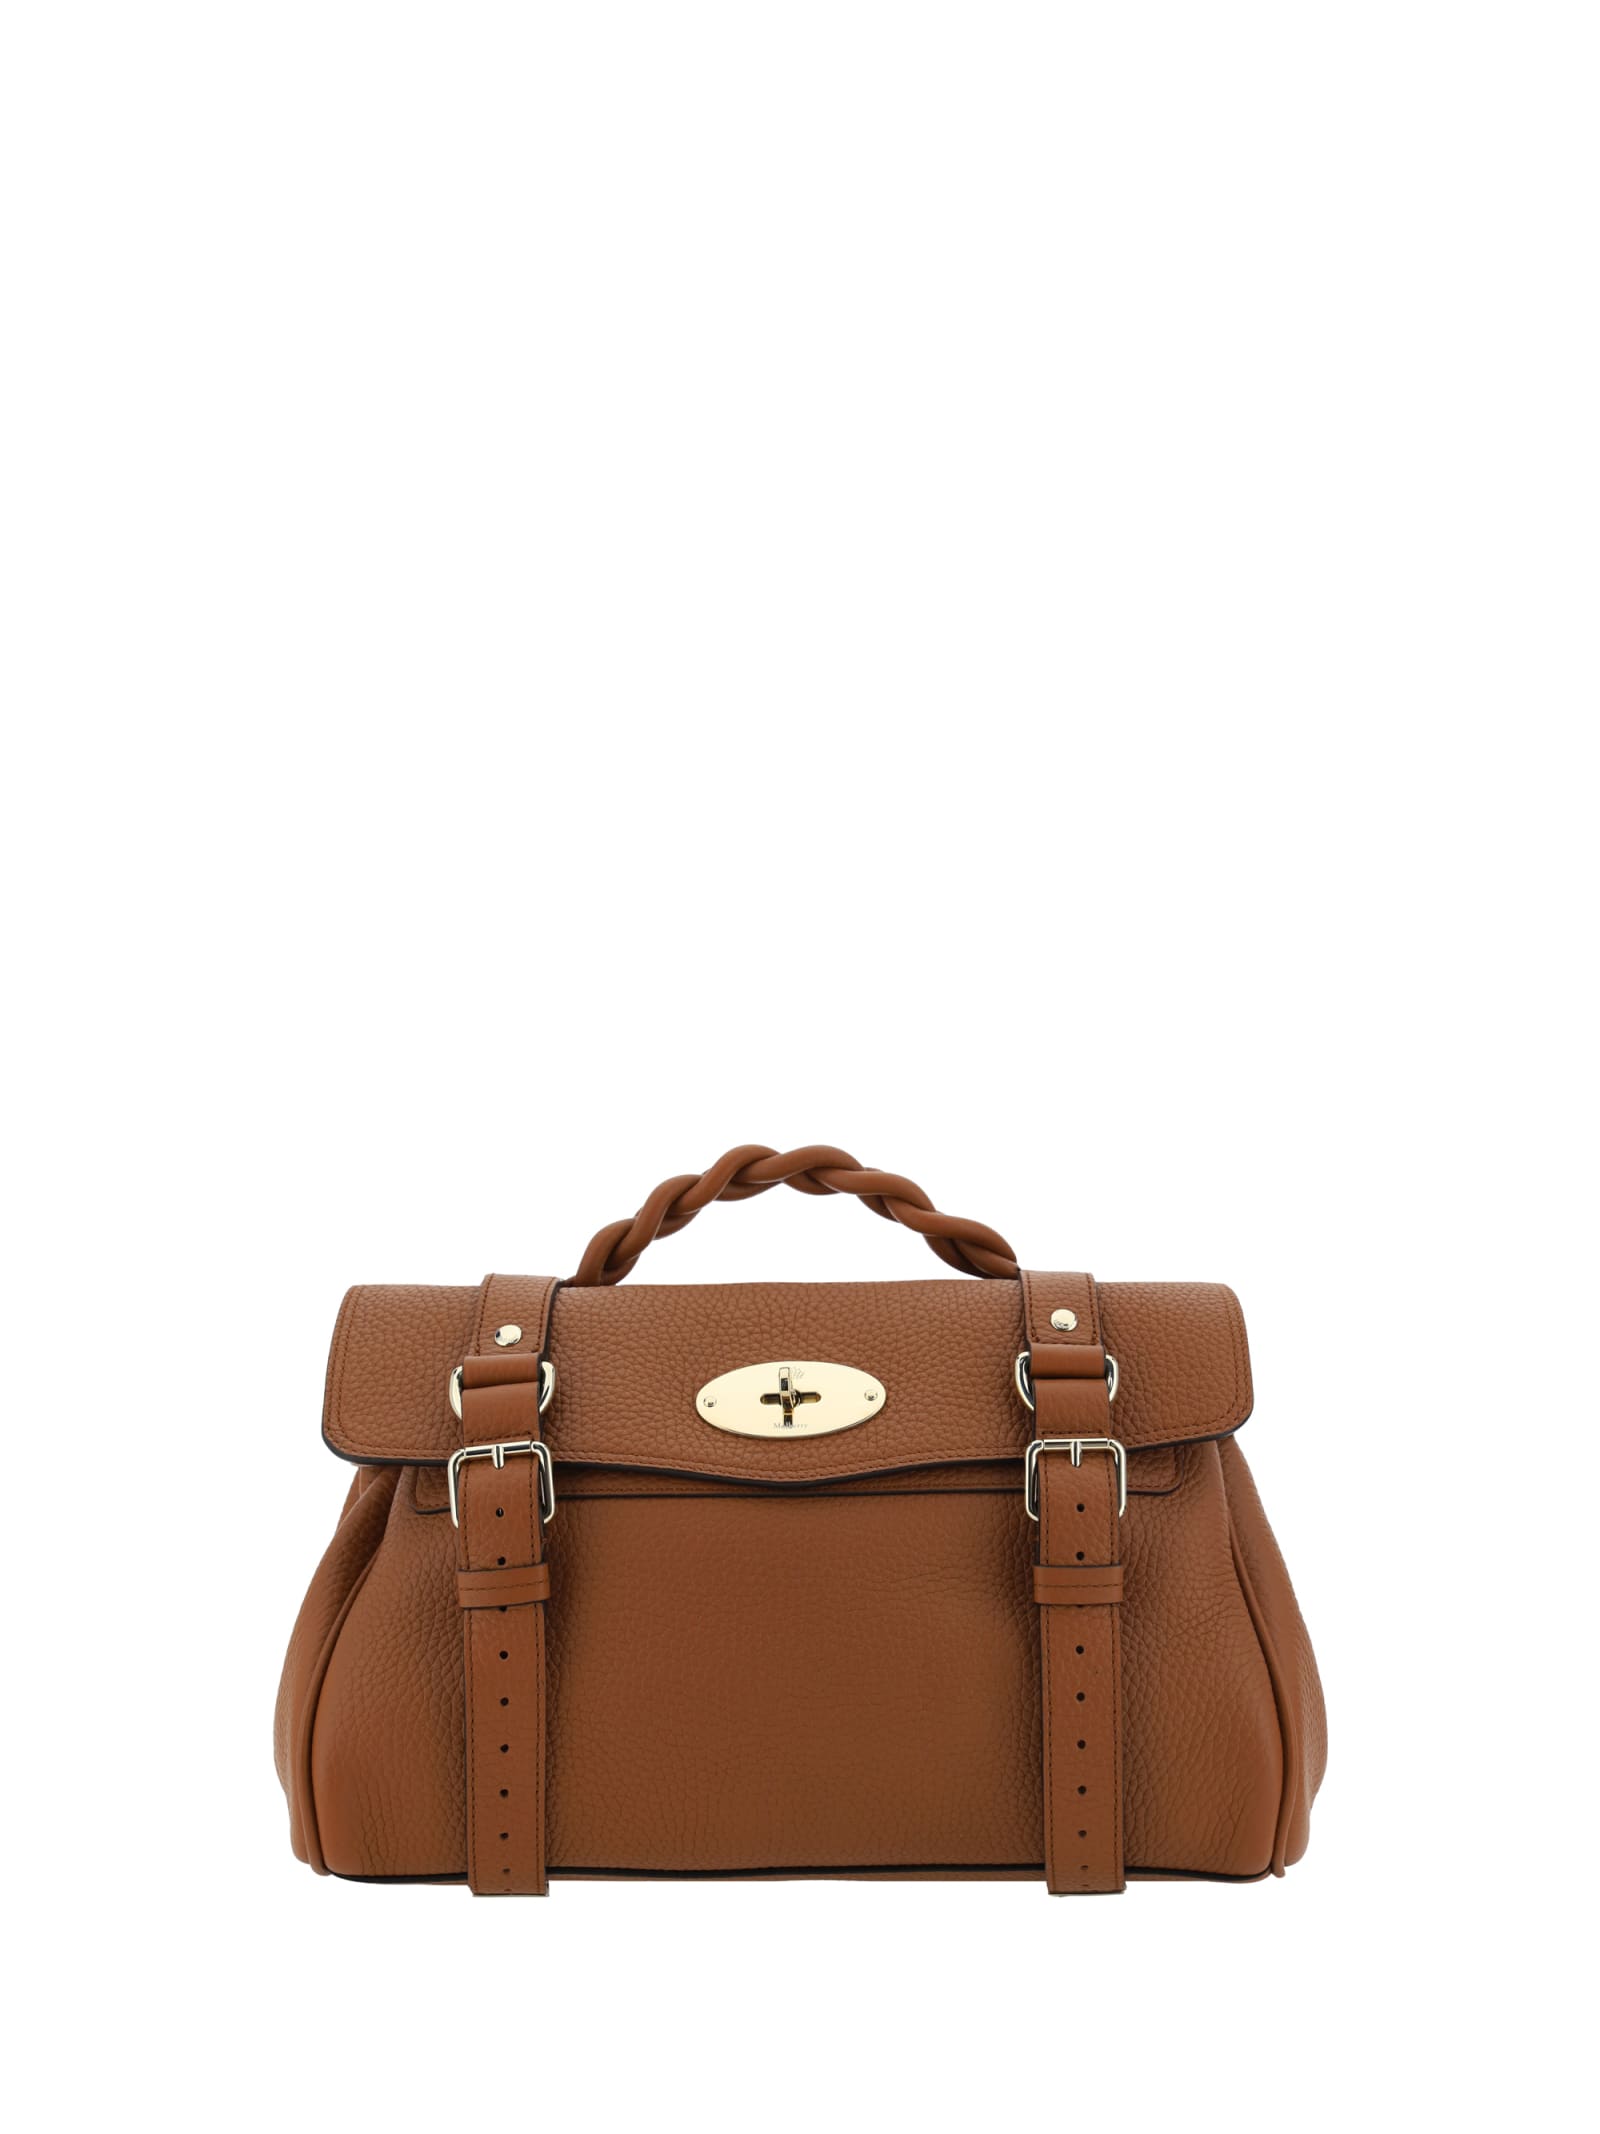 Mulberry Alexa Handbag In Chestnut